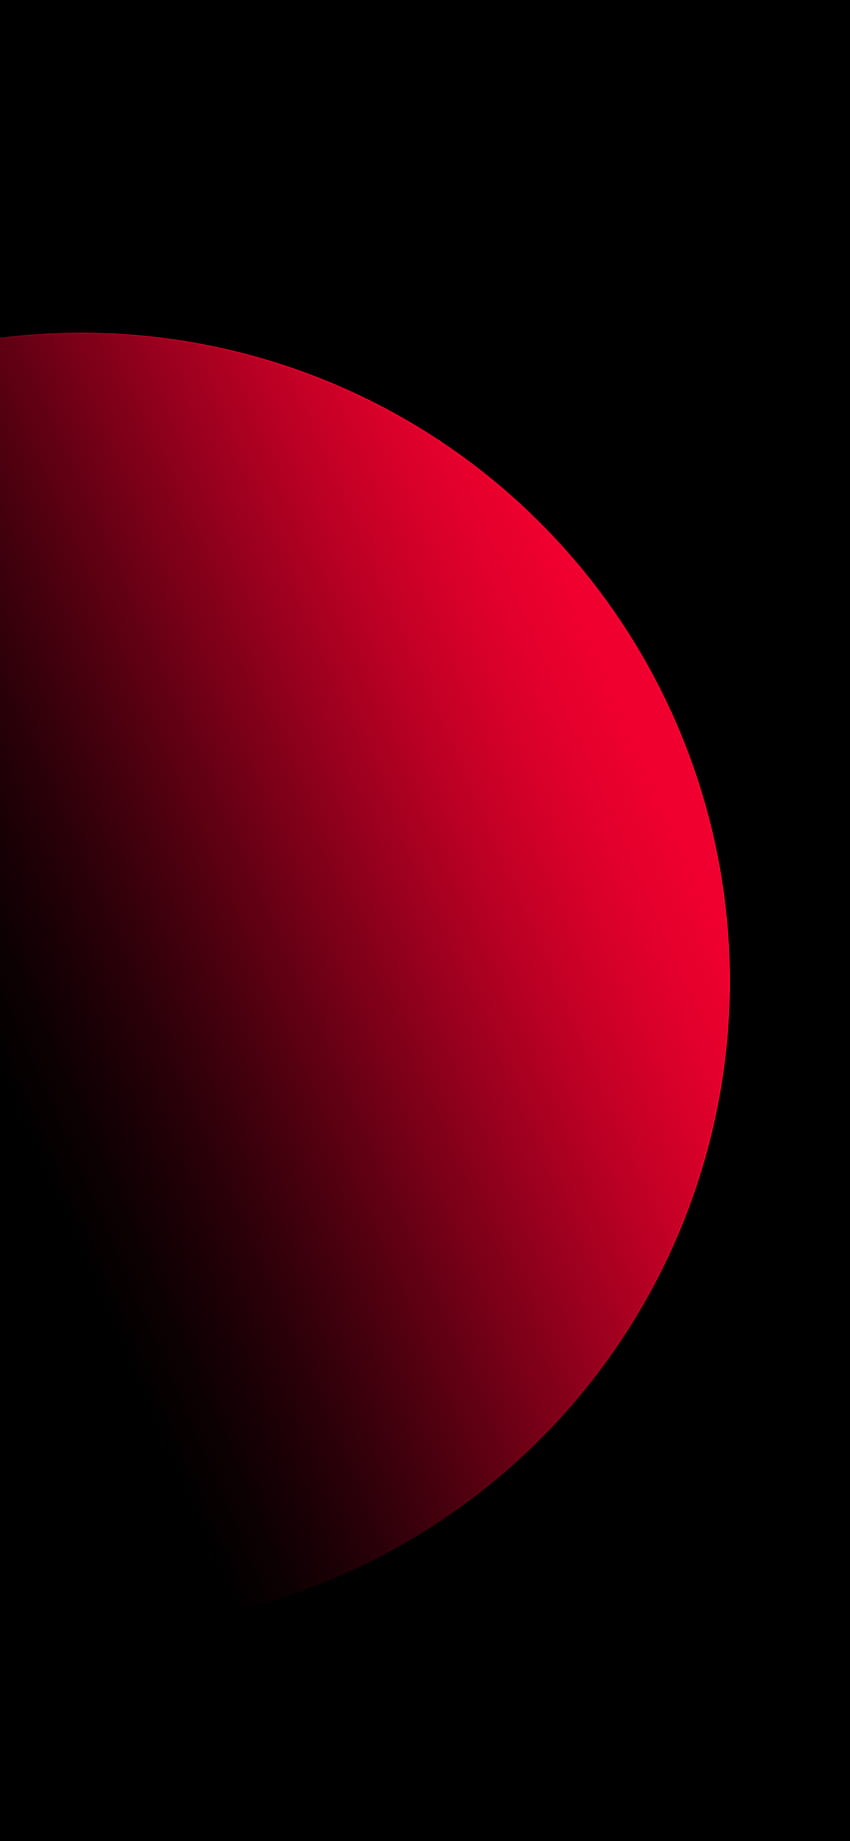 Rot, schwarz, minimalistisch, rund, Fantasie, Offenbarung, Ruhe, Denken, nacenklich, Visualisierung,. Абстрактное, Обои для iphone, Обои для telефона HD-Handy-Hintergrundbild